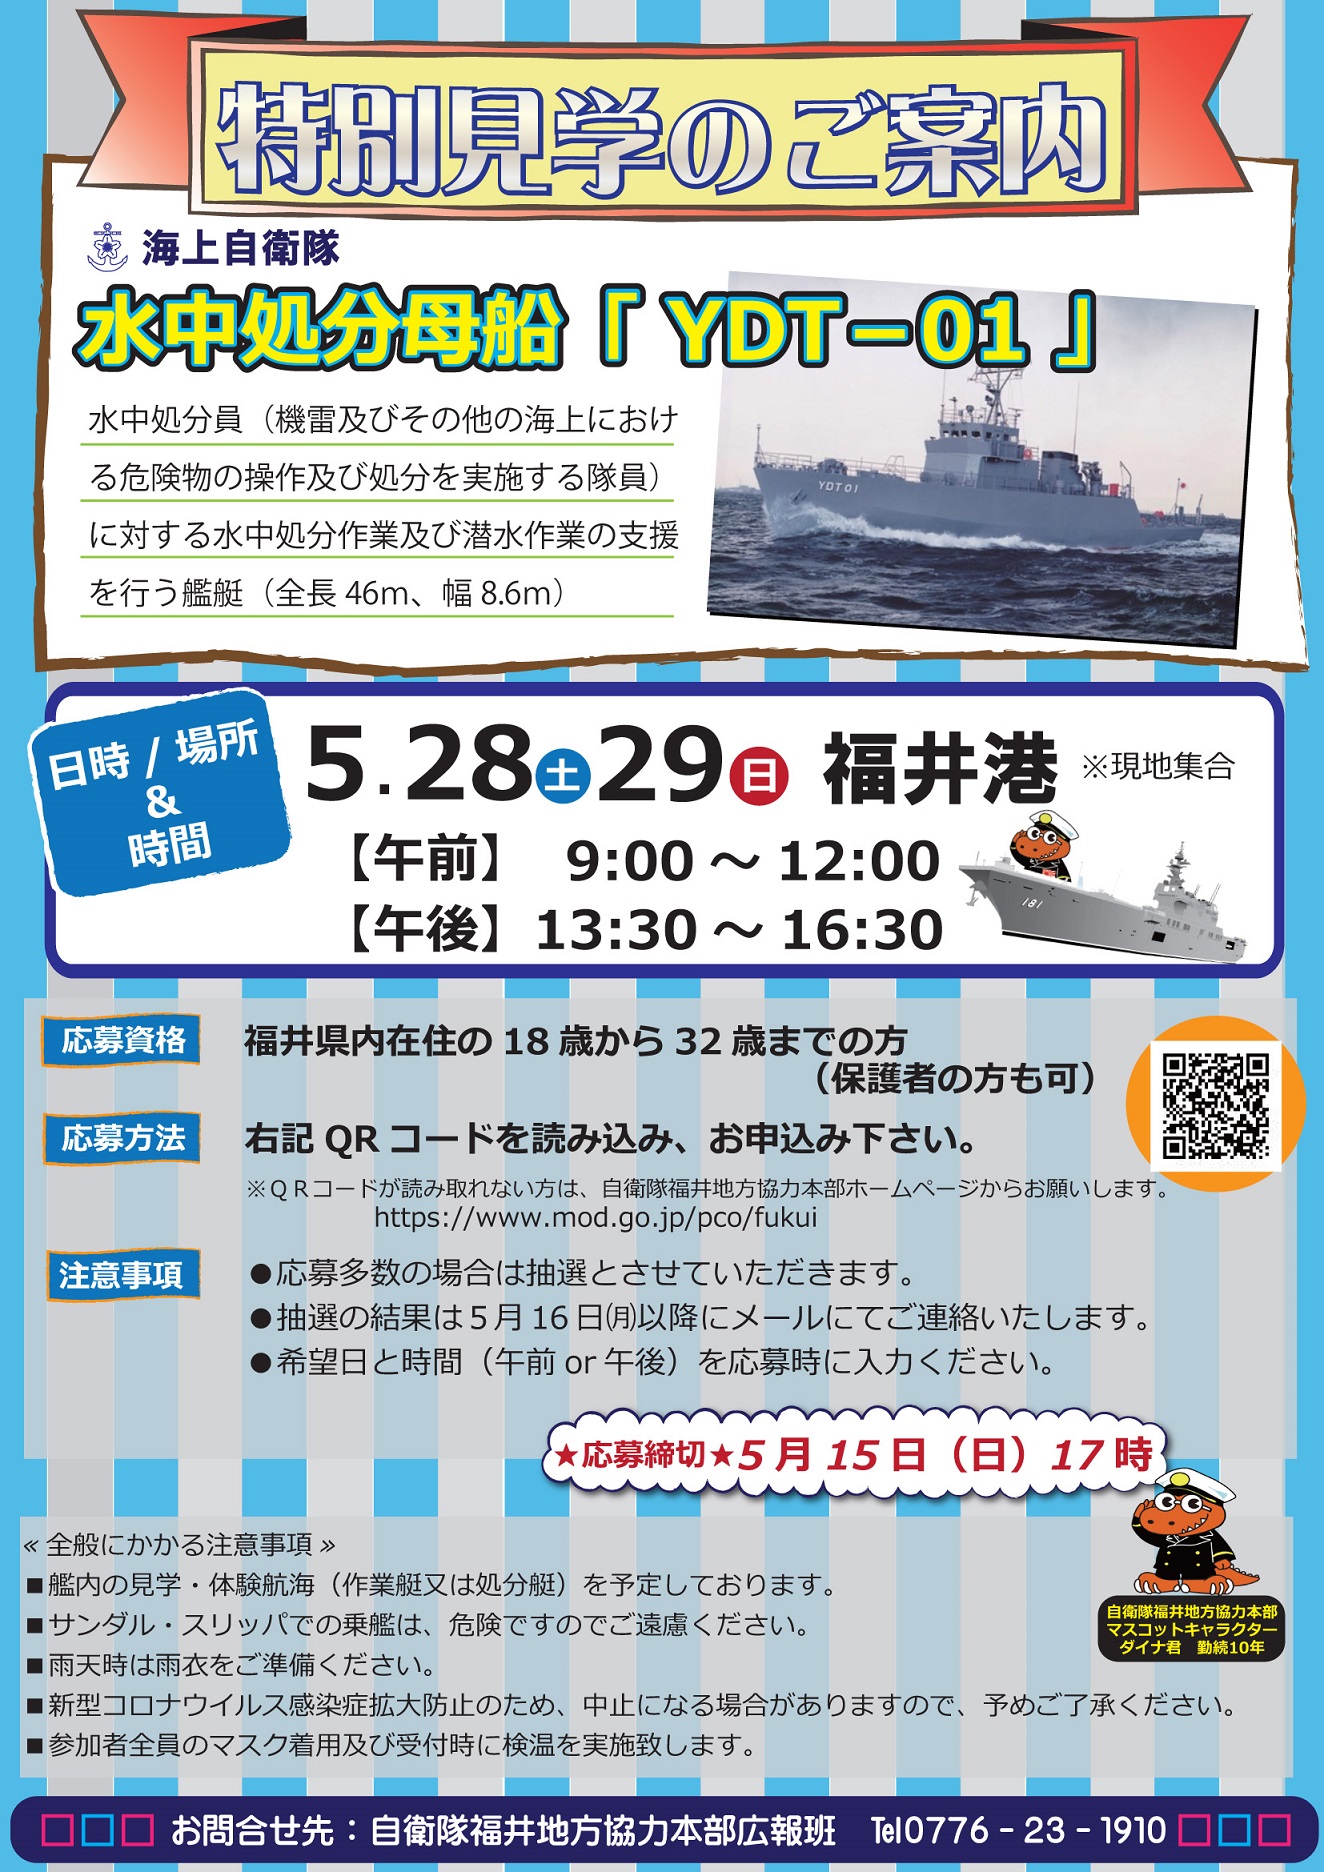 水中処分母船「YDT-01」特別見学 in 福井港ポスター